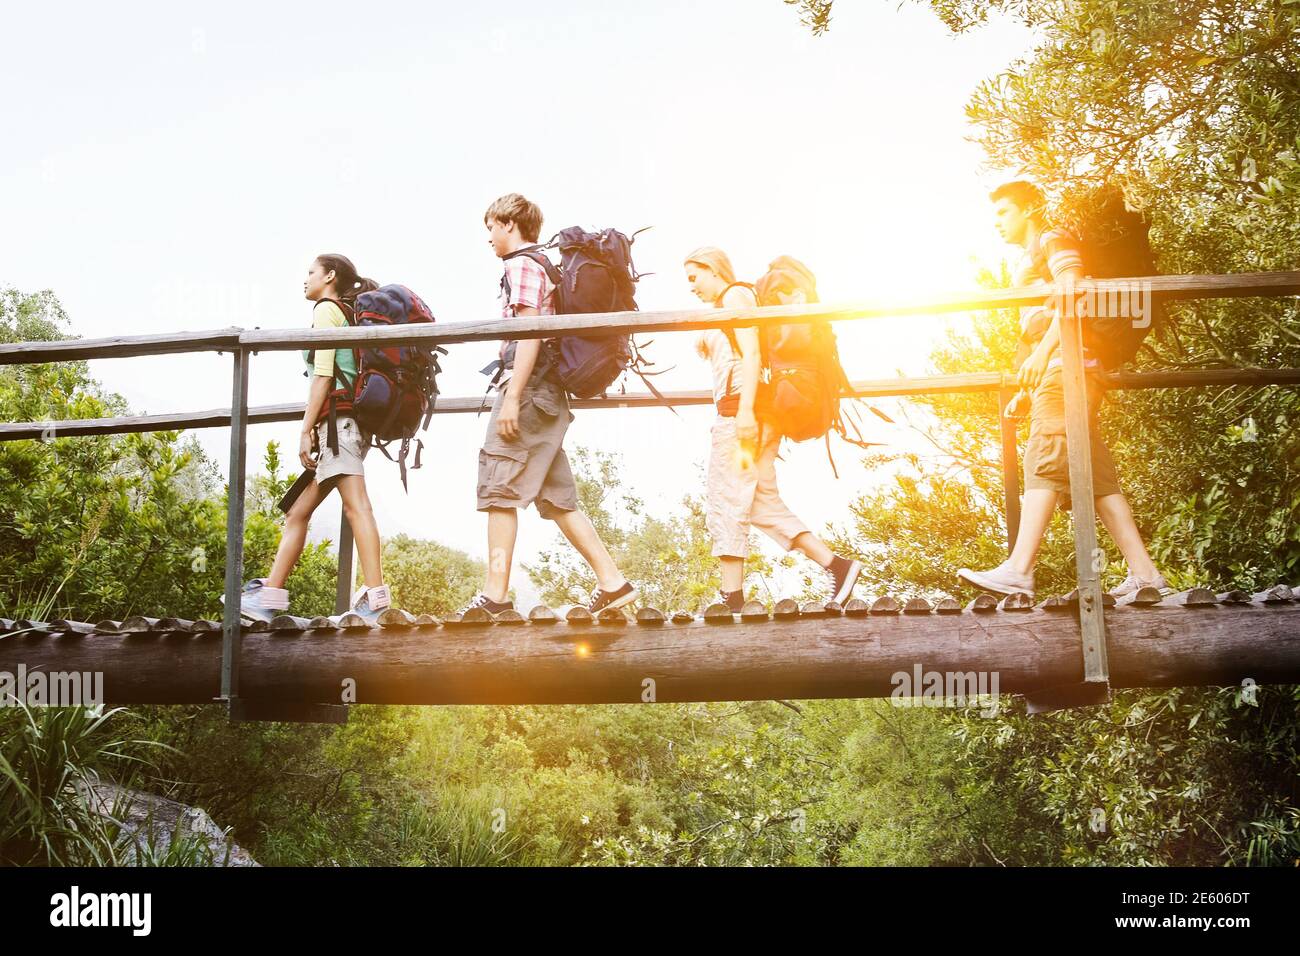 Ragazzi adolescenti e le ragazze con zaini camminando sul ponte in foresta Foto Stock